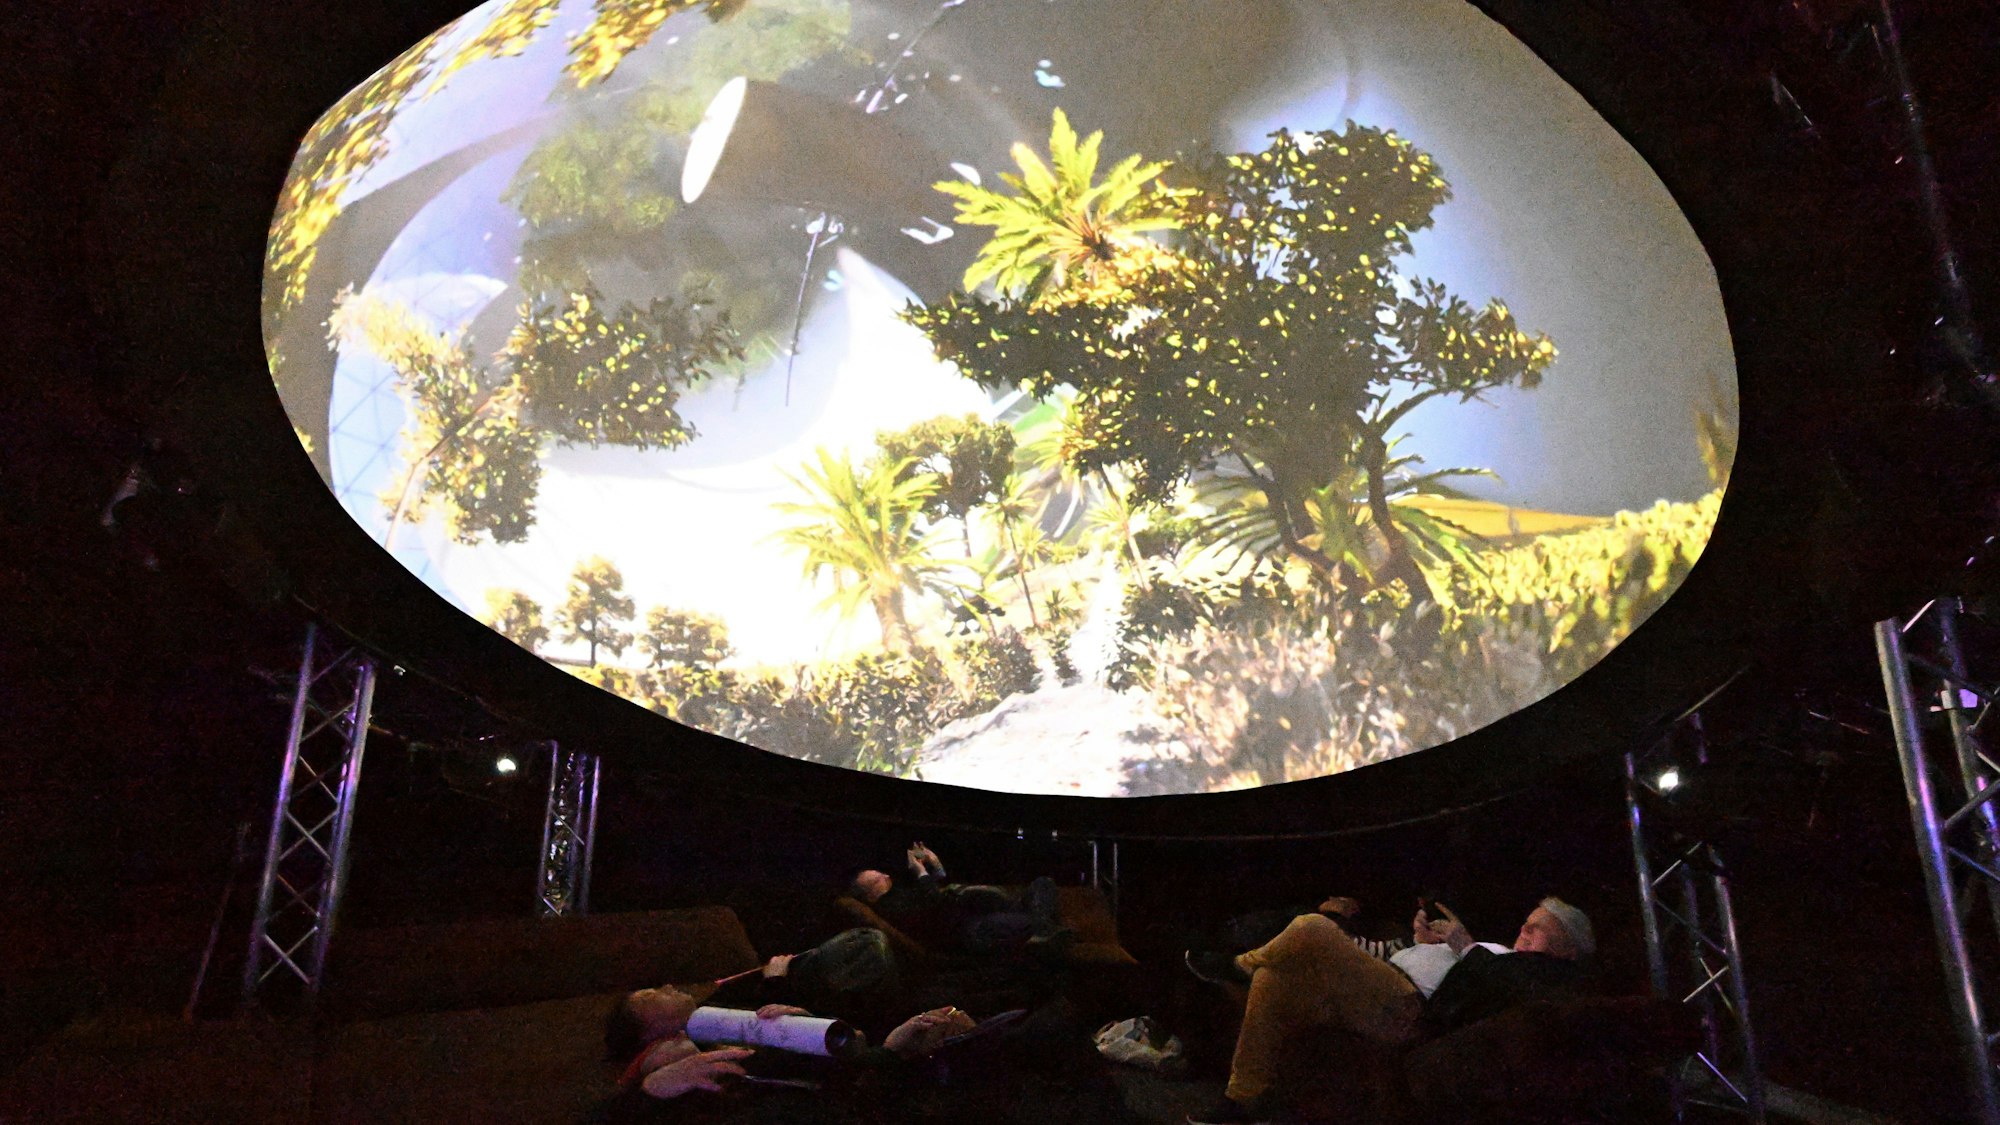 Menschen liegen unter einer Videoprojektion mit gefilmten Pflanzen.